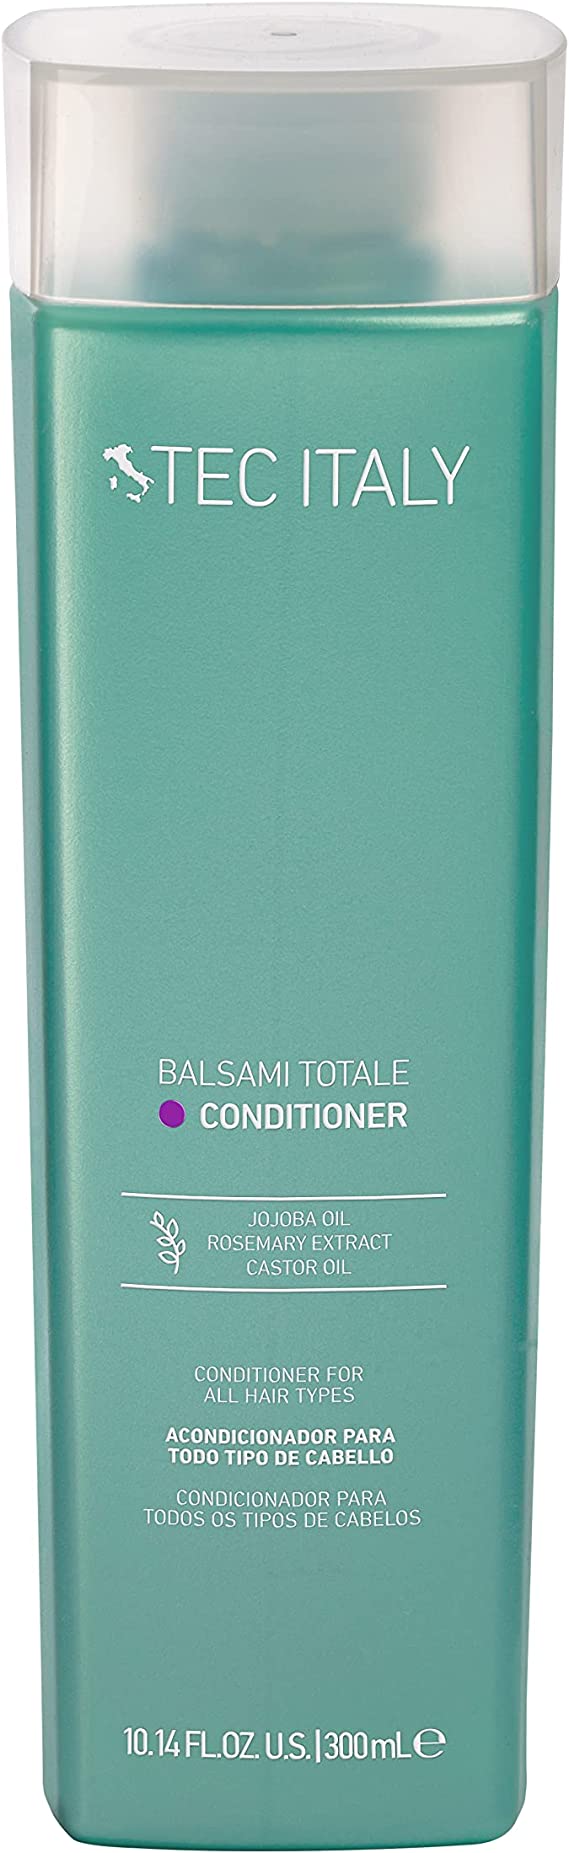 Kit Shampoo Totale + Acondicionador Balsami Totale Tec Italy